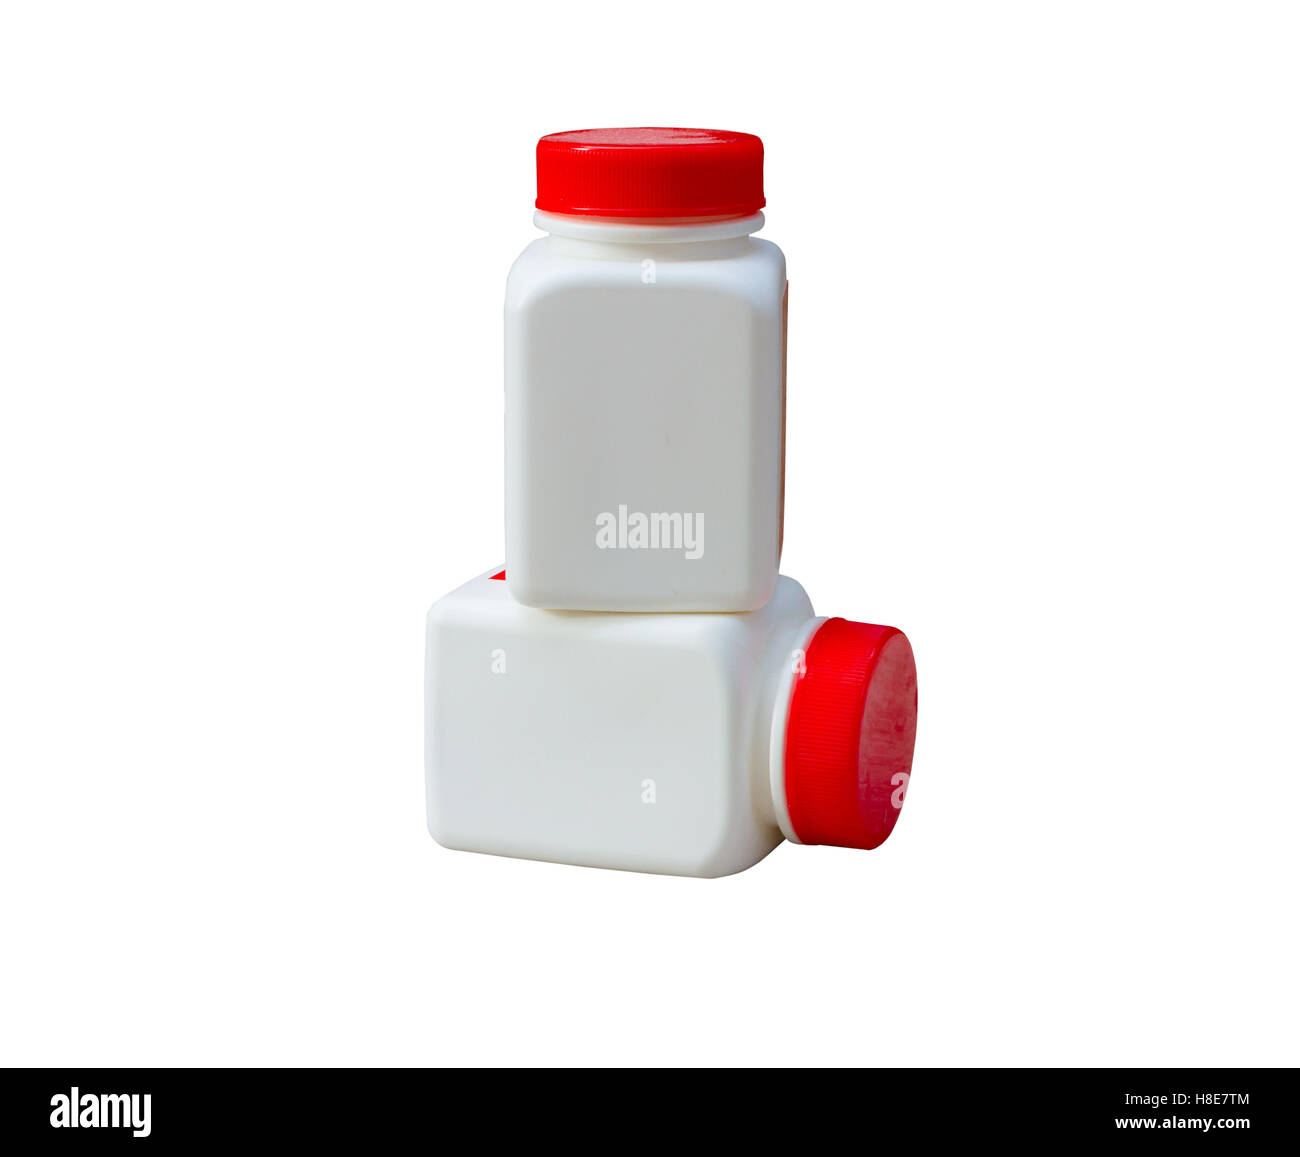 Pillendose weiße kapselflasche aus kunststoff für nahrungsergänzungsmittel